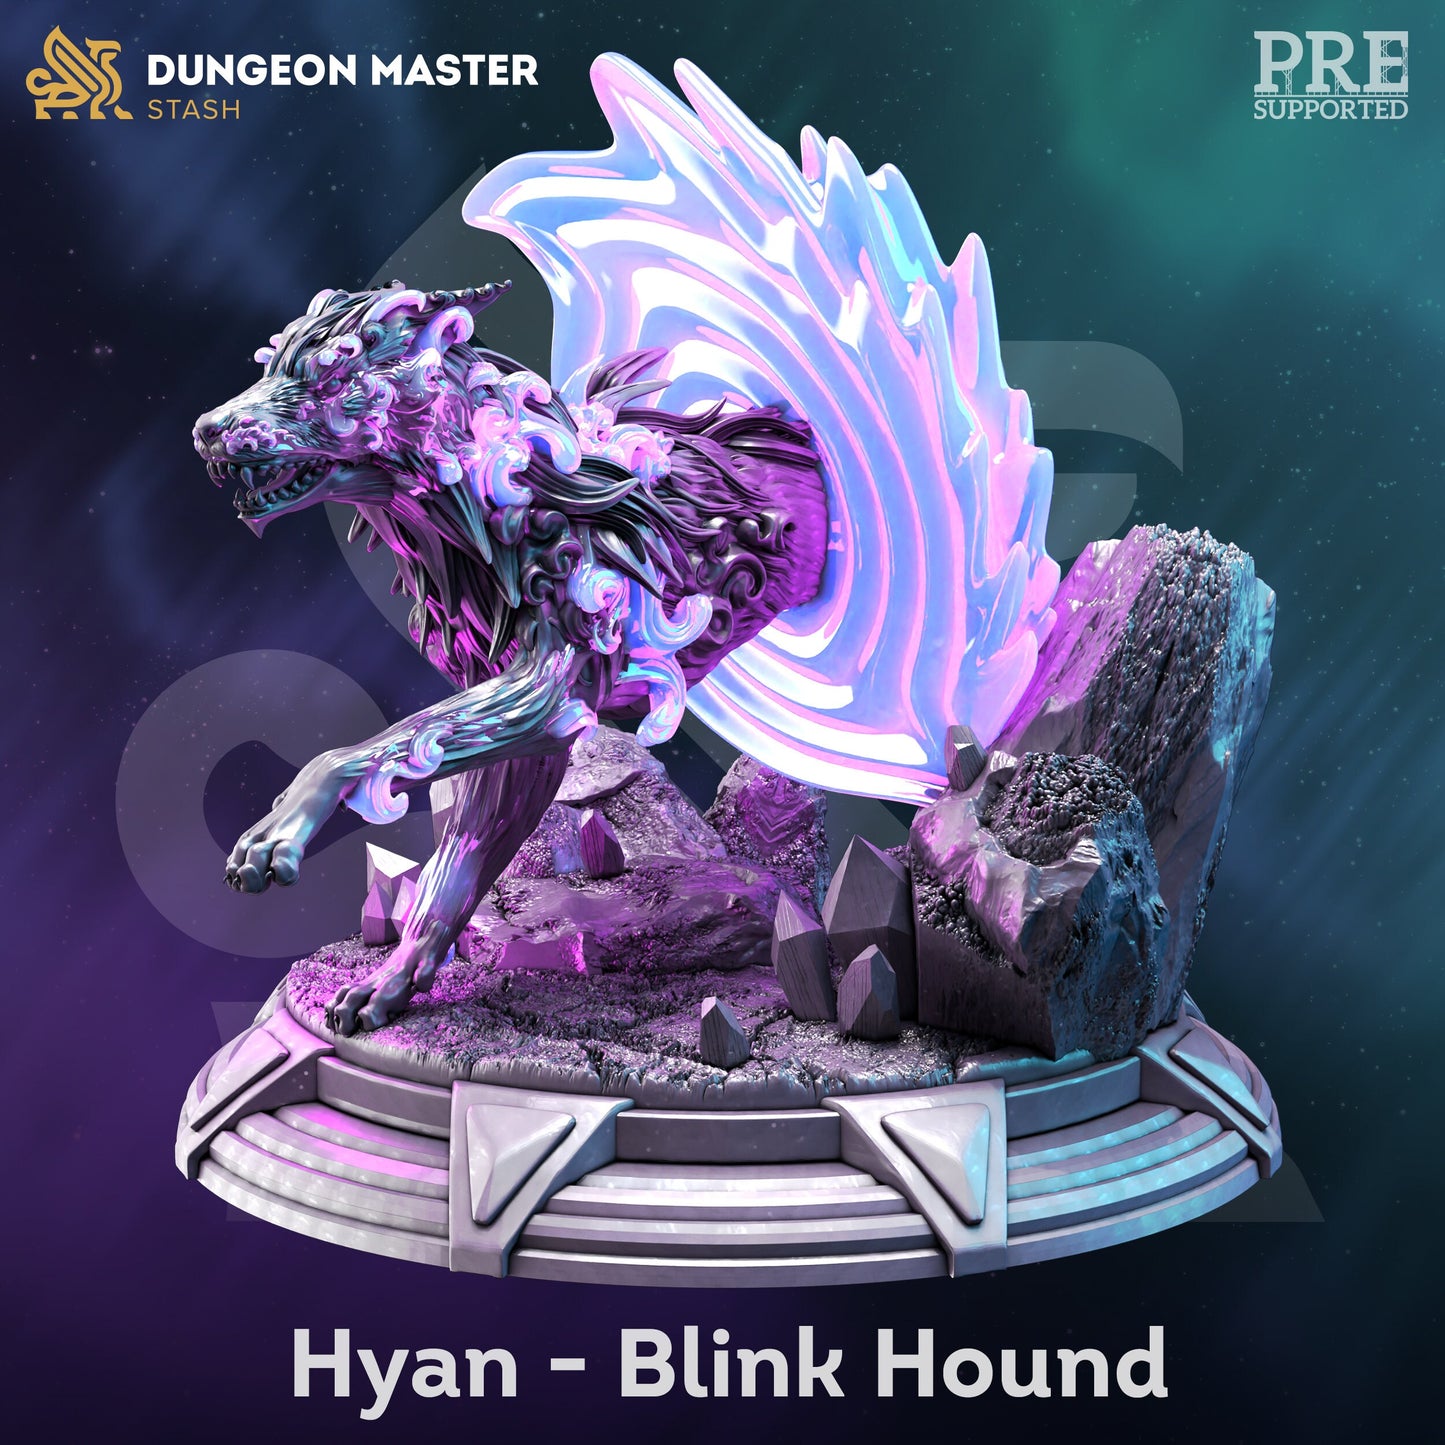 Hyan, Blink Hound by DM Stash